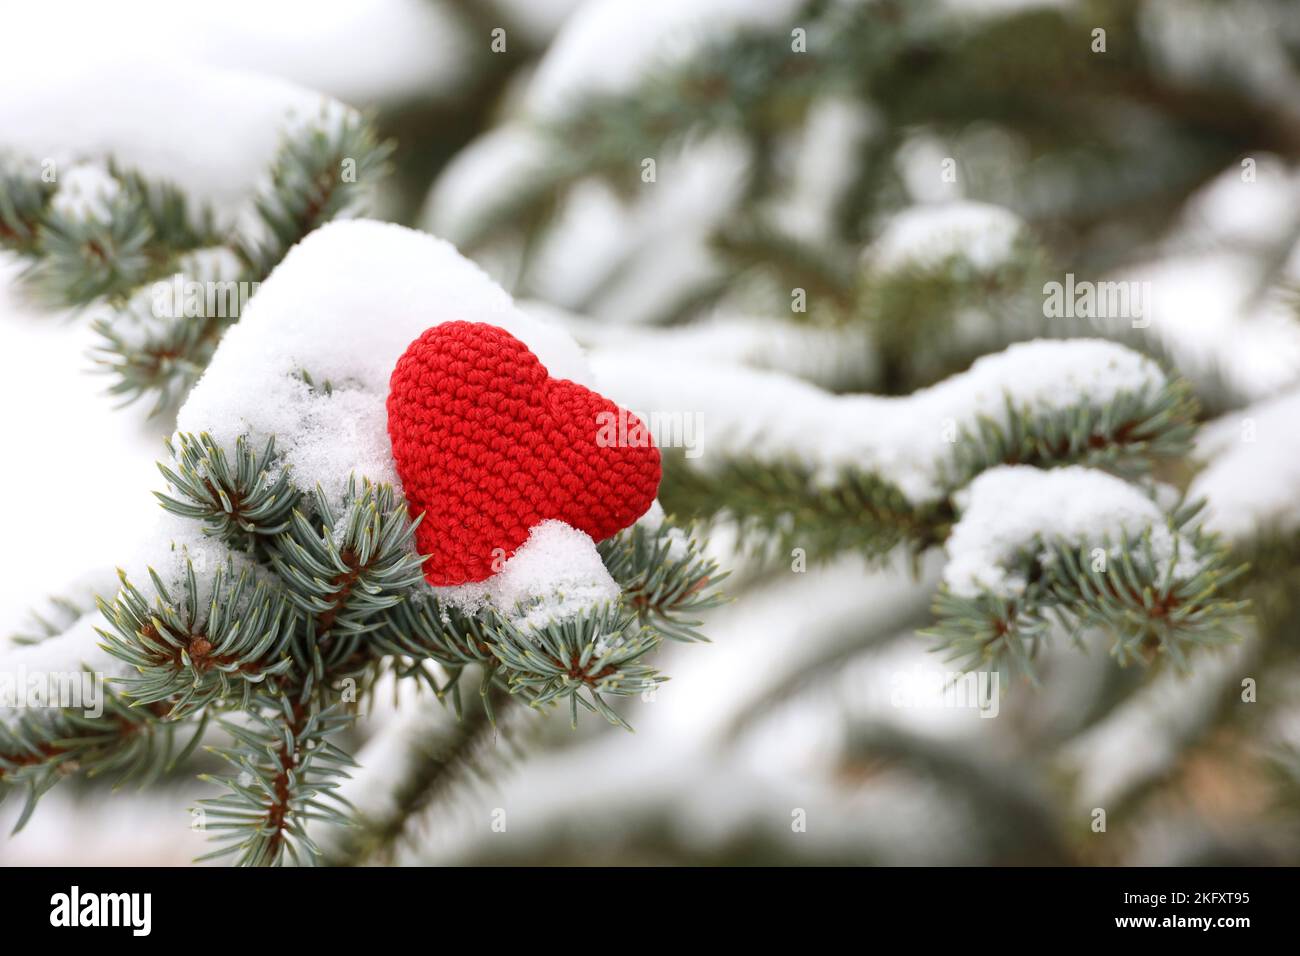 Cuore a maglia rosso su rami di abete ricoperti di neve. Cuore d'amore, simbolo dell'amore romantico, concetto di clima invernale, nevicate, umore natalizio Foto Stock